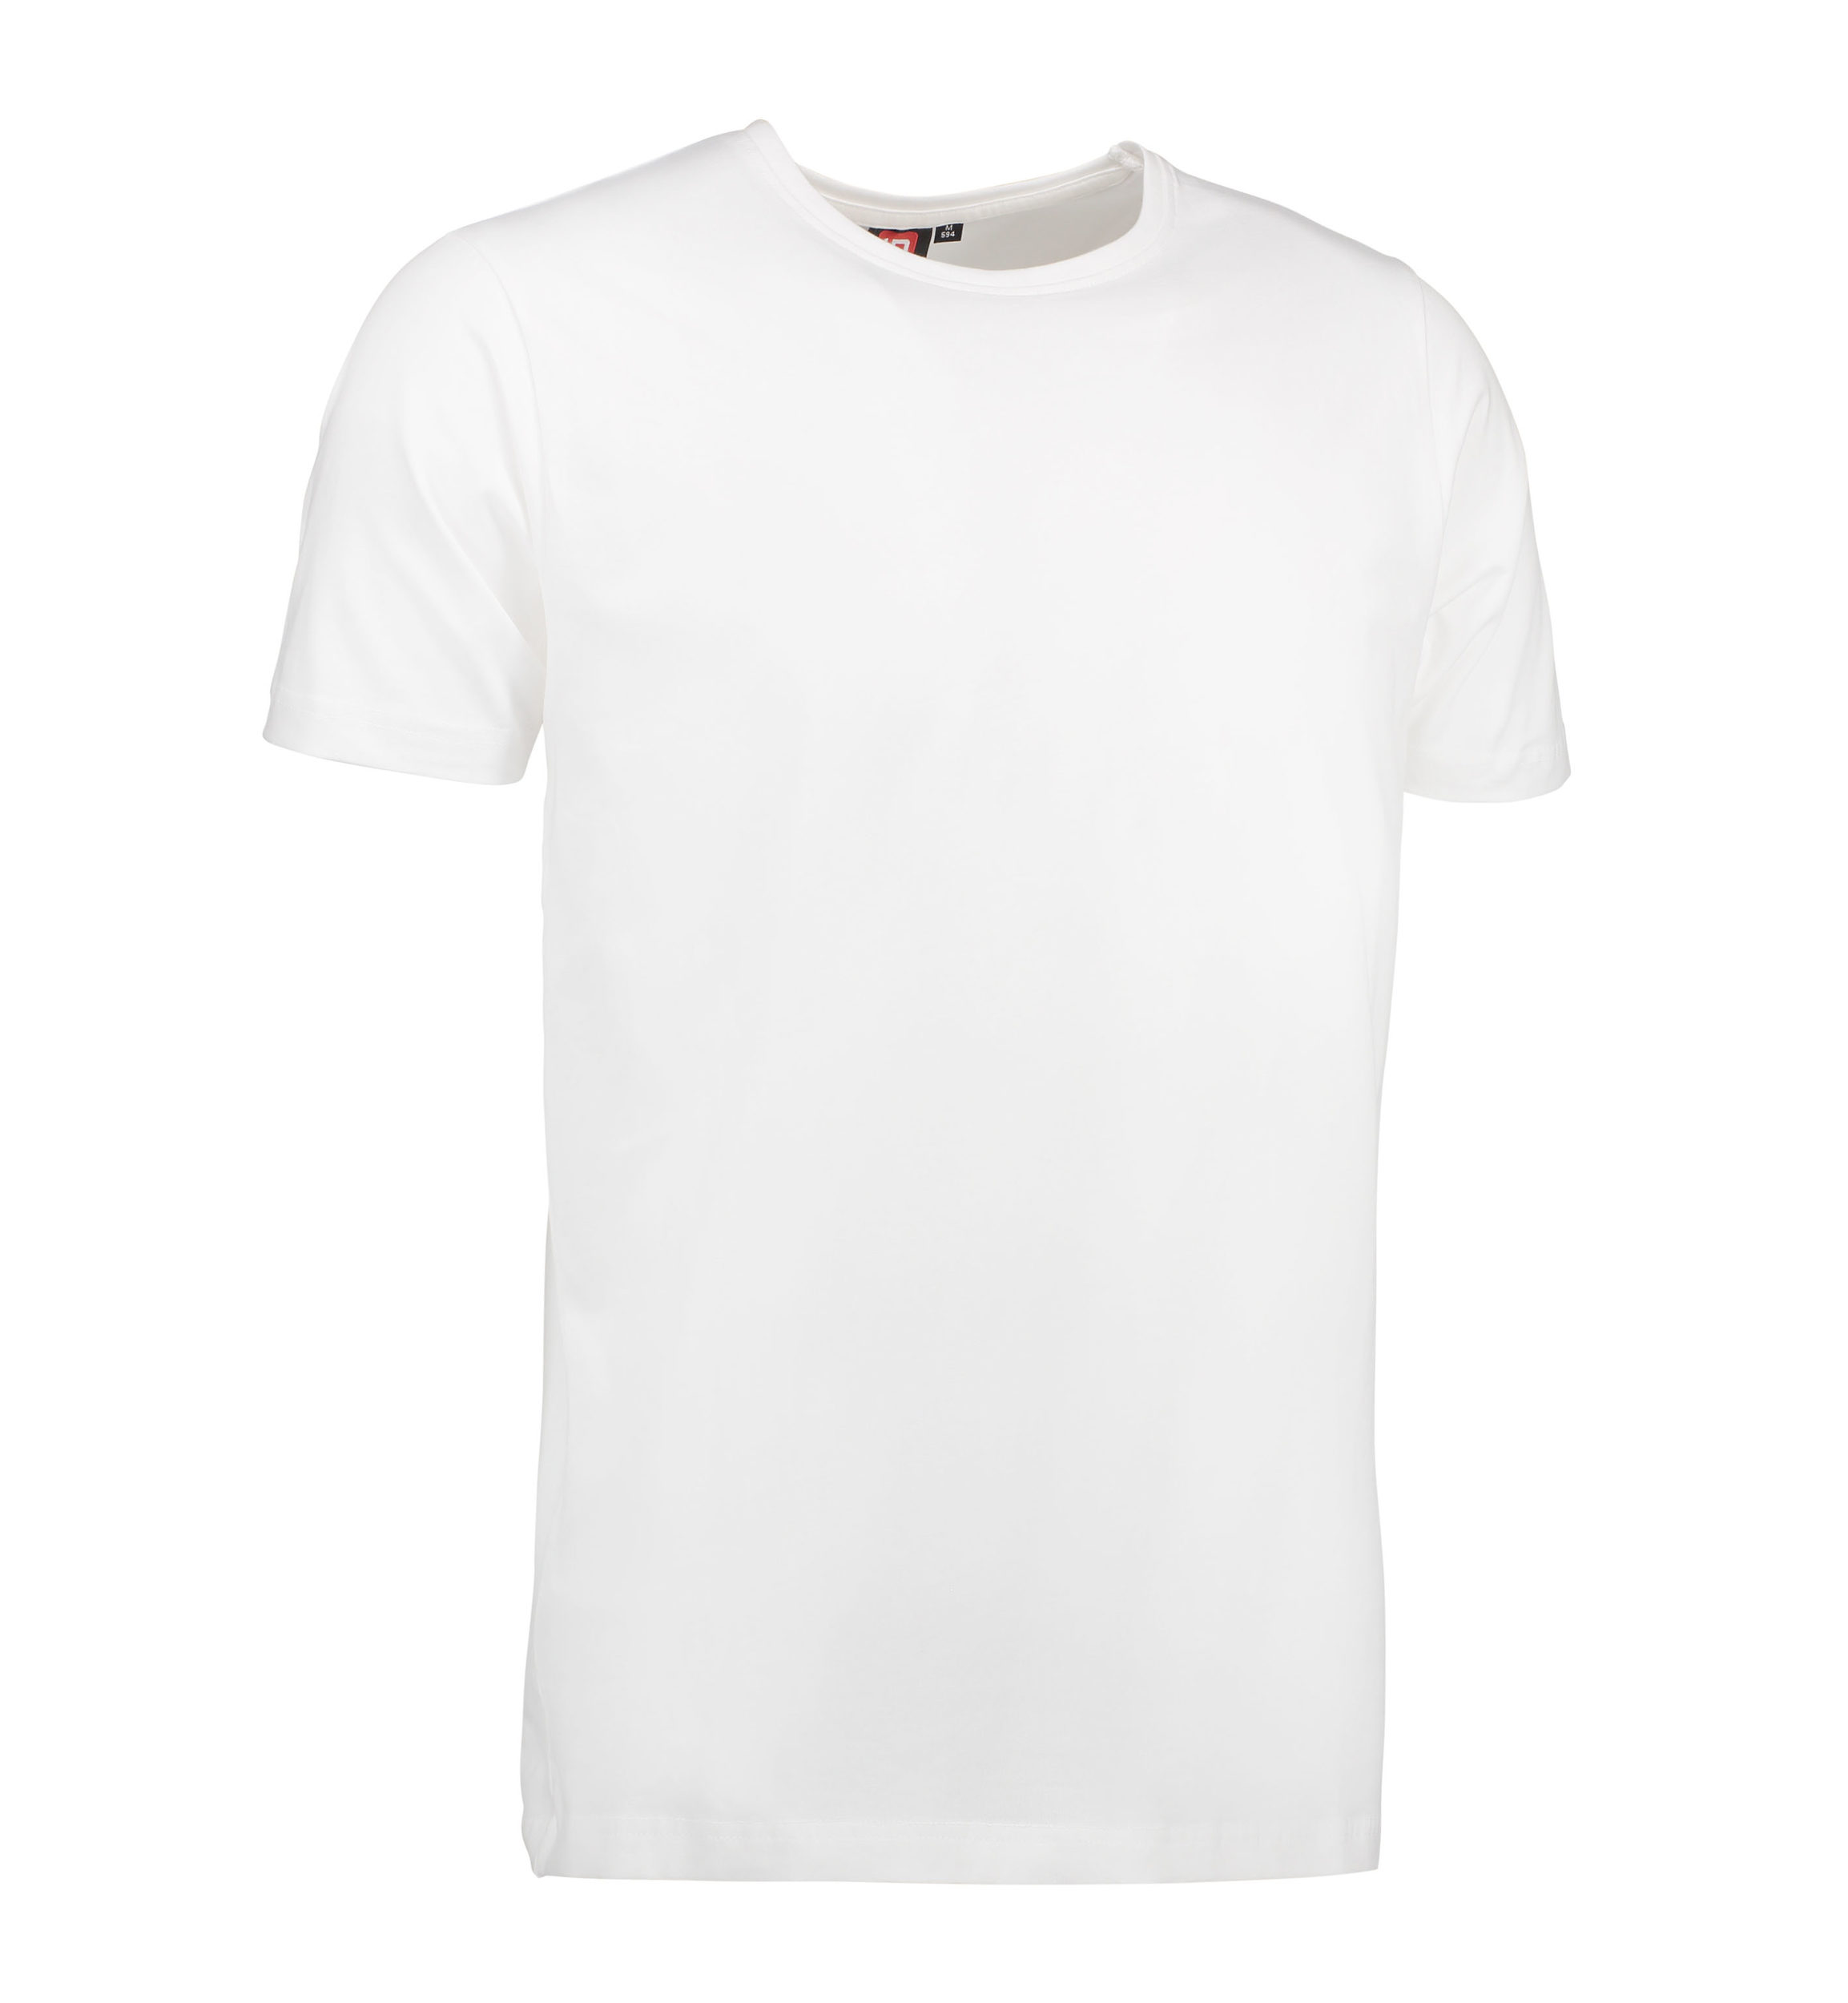 Billede af Stretch t-shirt til mænd i hvid - M hos Sygeplejebutikken.dk